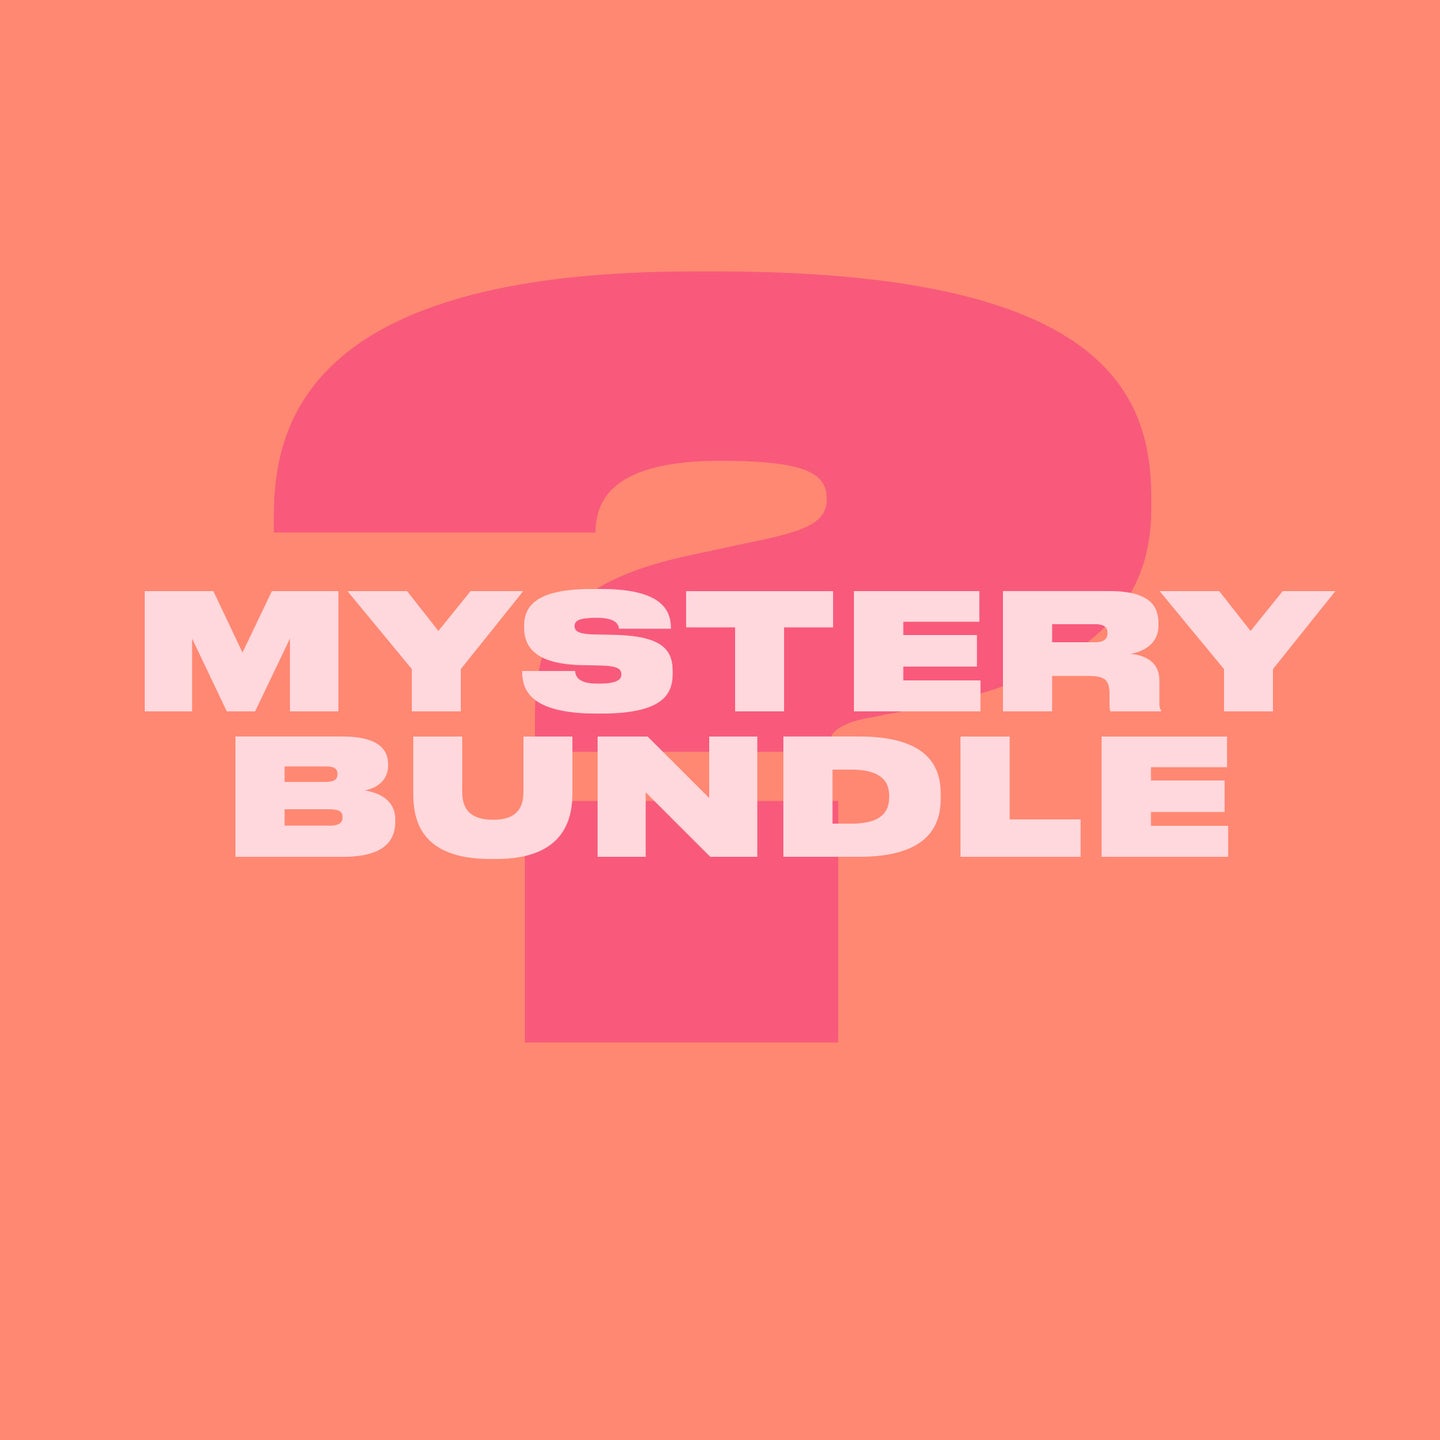 Mystery Bundle 1